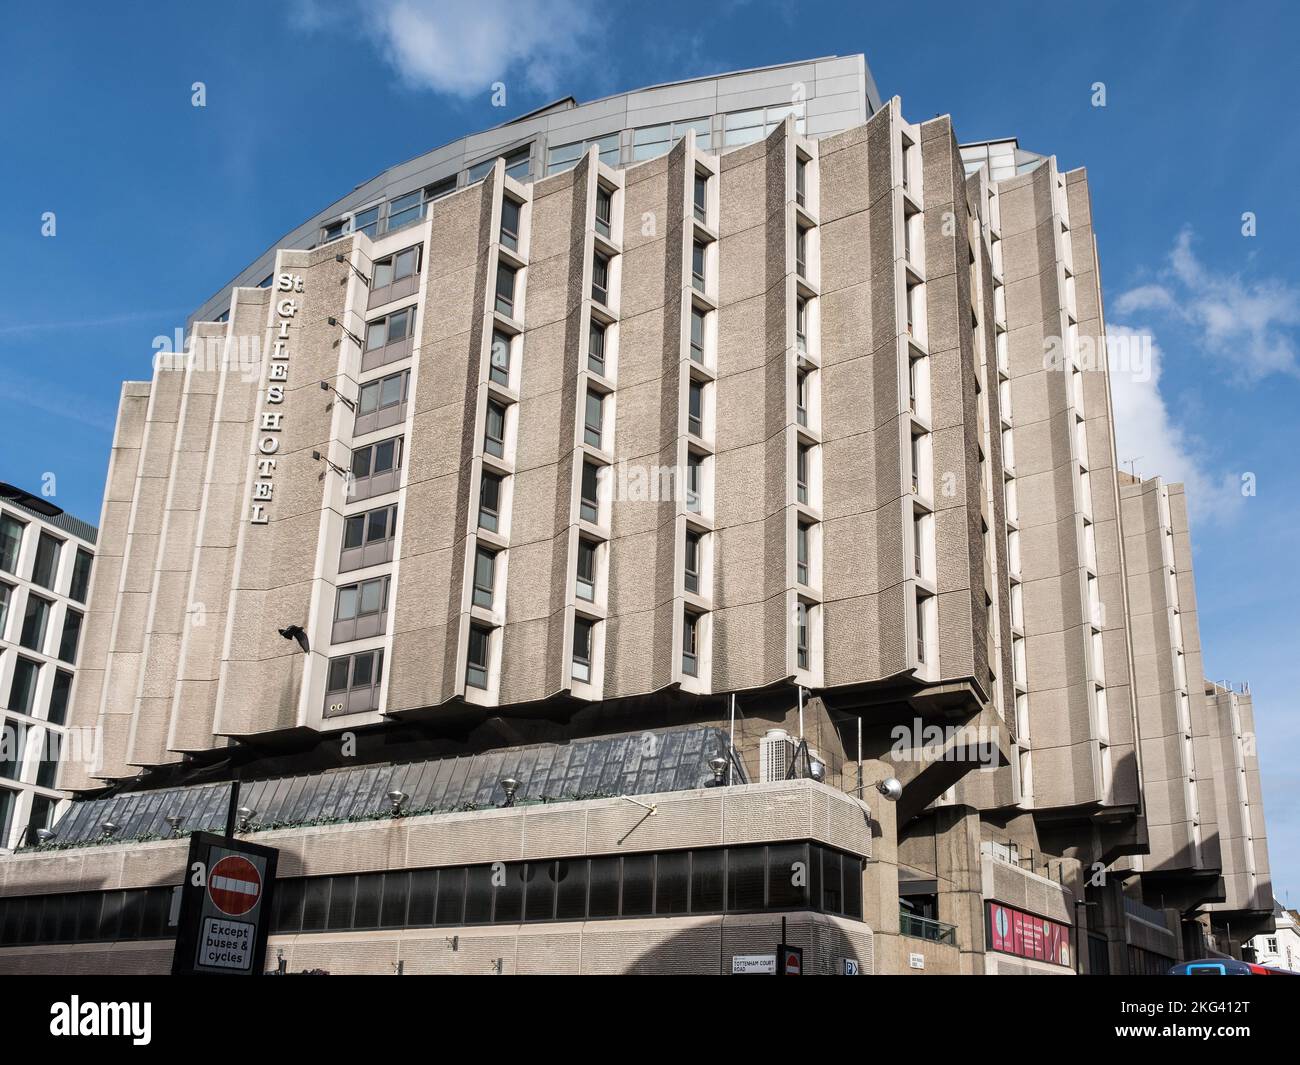 St Giles Hotel in Bloomsbury nahe Tottenham Court Road, Central London, Beispiel für Brutalist Architecture. Stockfoto